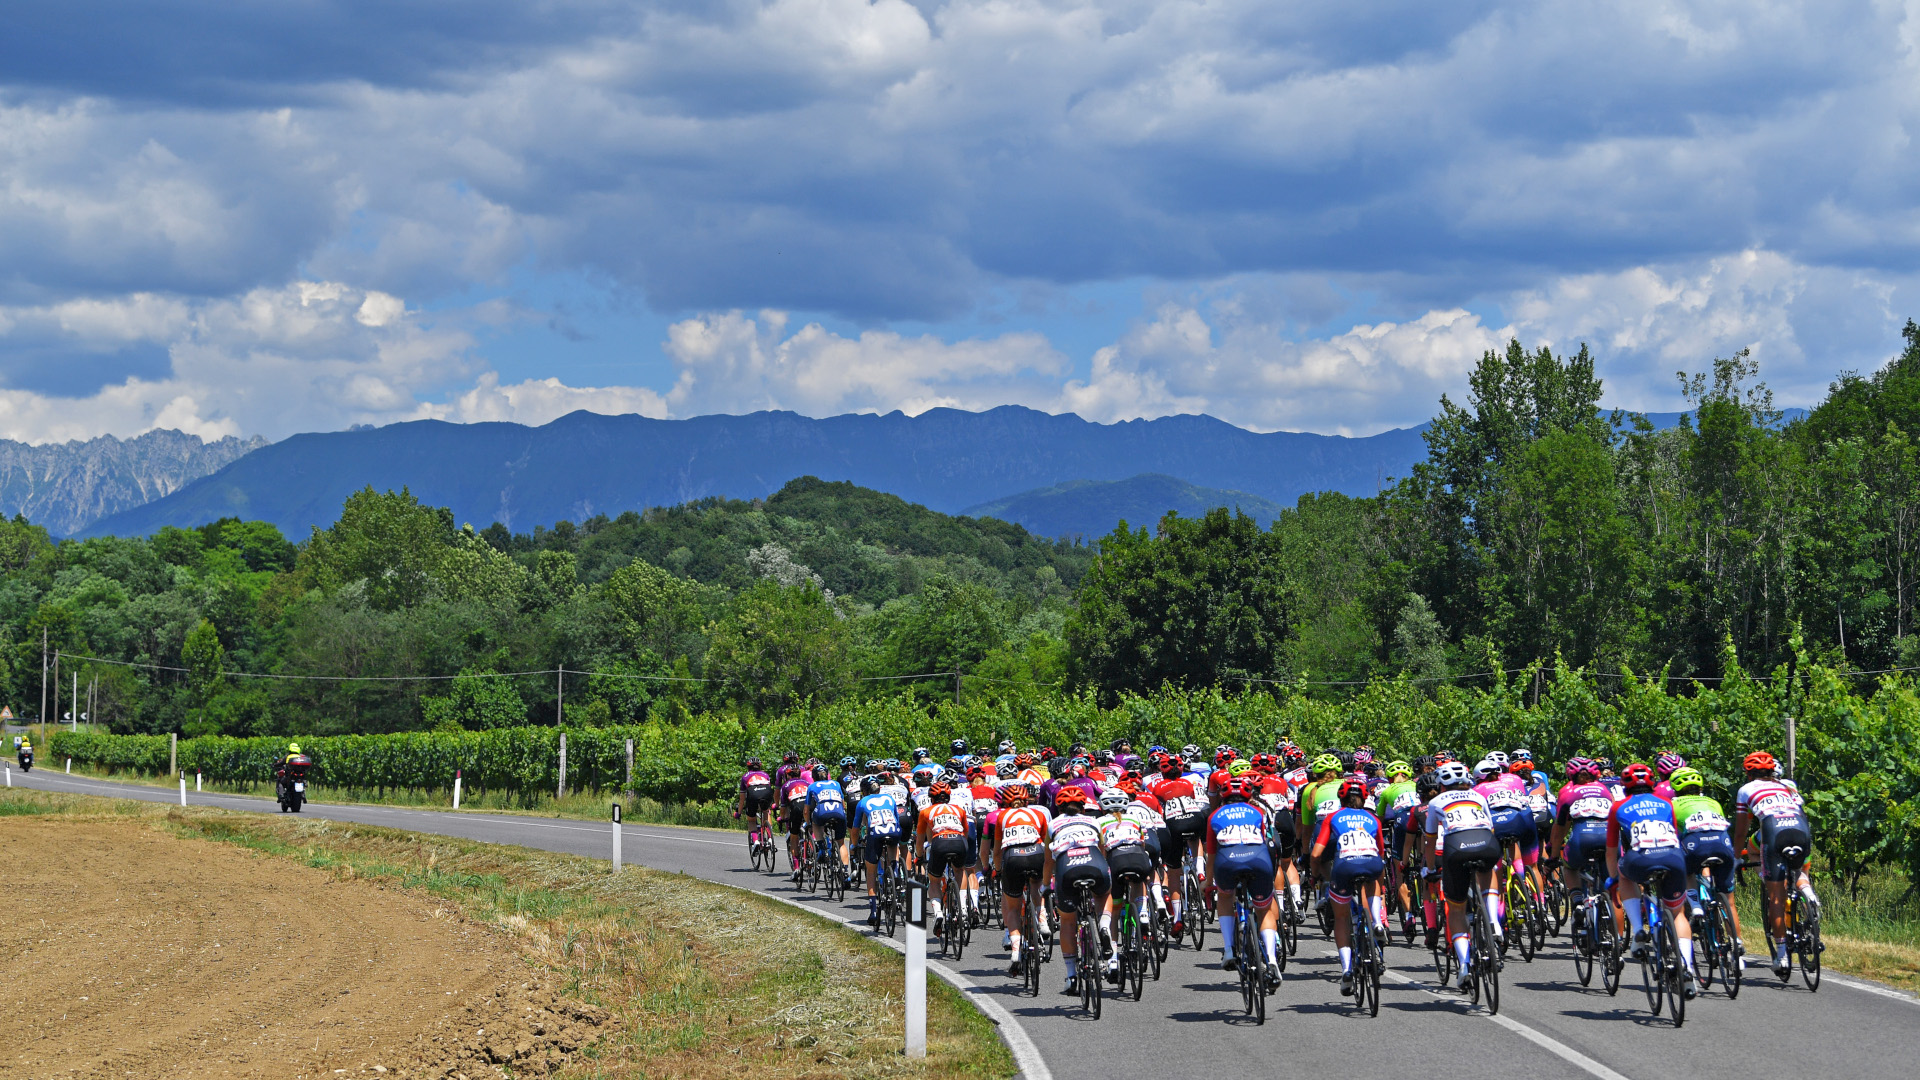 The peleton heads to the mountains at the Giro d'Italia